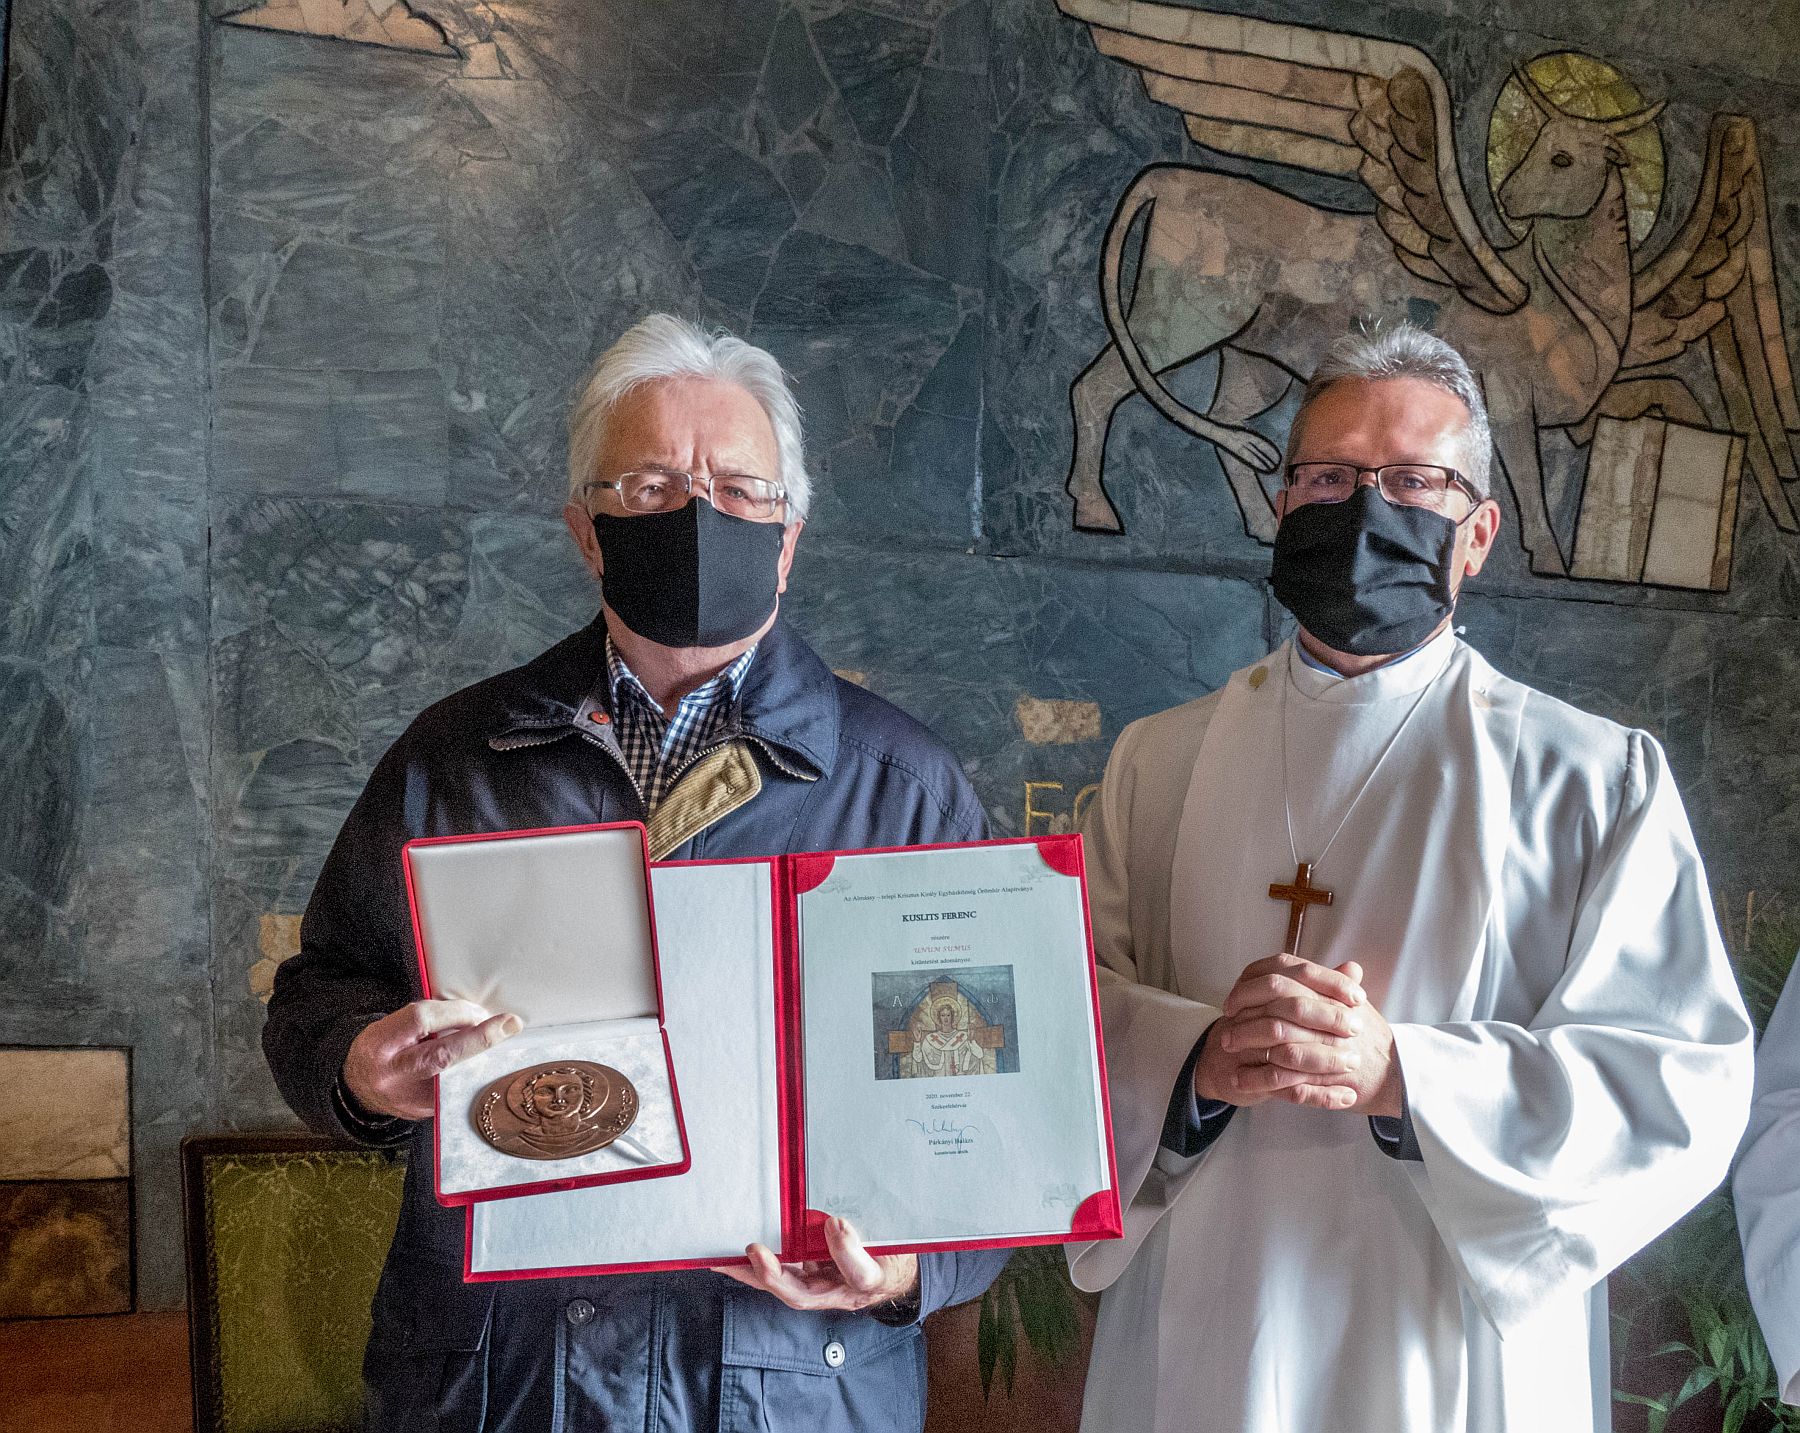 Búcsúnapot ünnepeltek Almássy-telepen - Kuslits Ferenc kapta a Krisztus Király-díjat